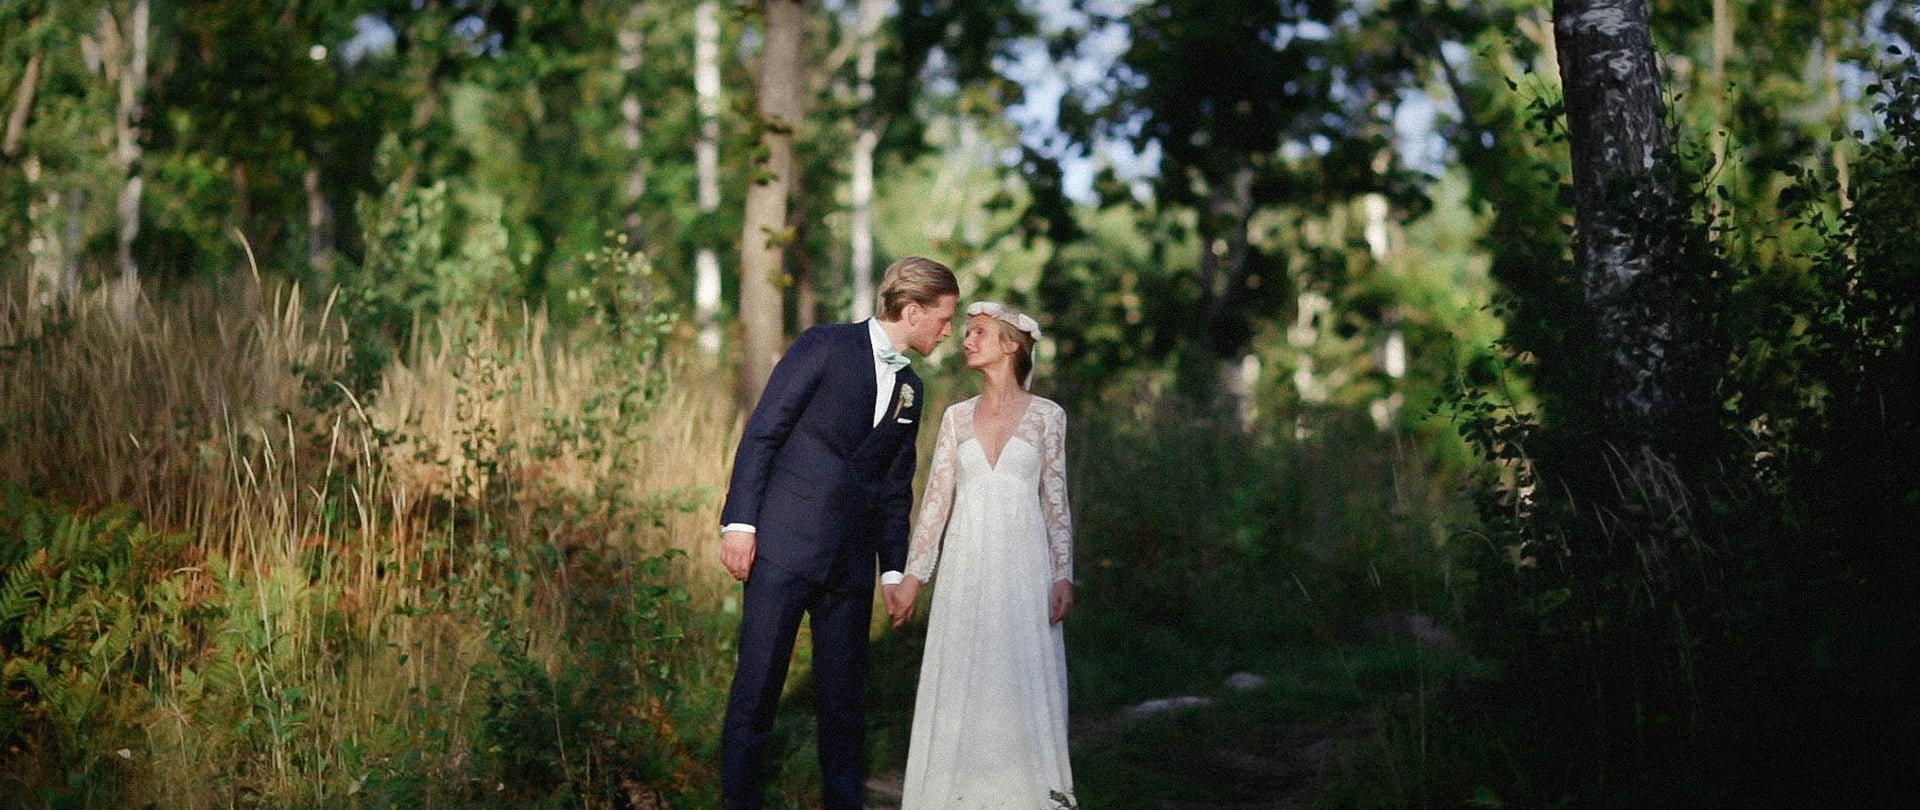 Flore & Jorgen Wedding Video Filmed atKatrineholm,Sweden